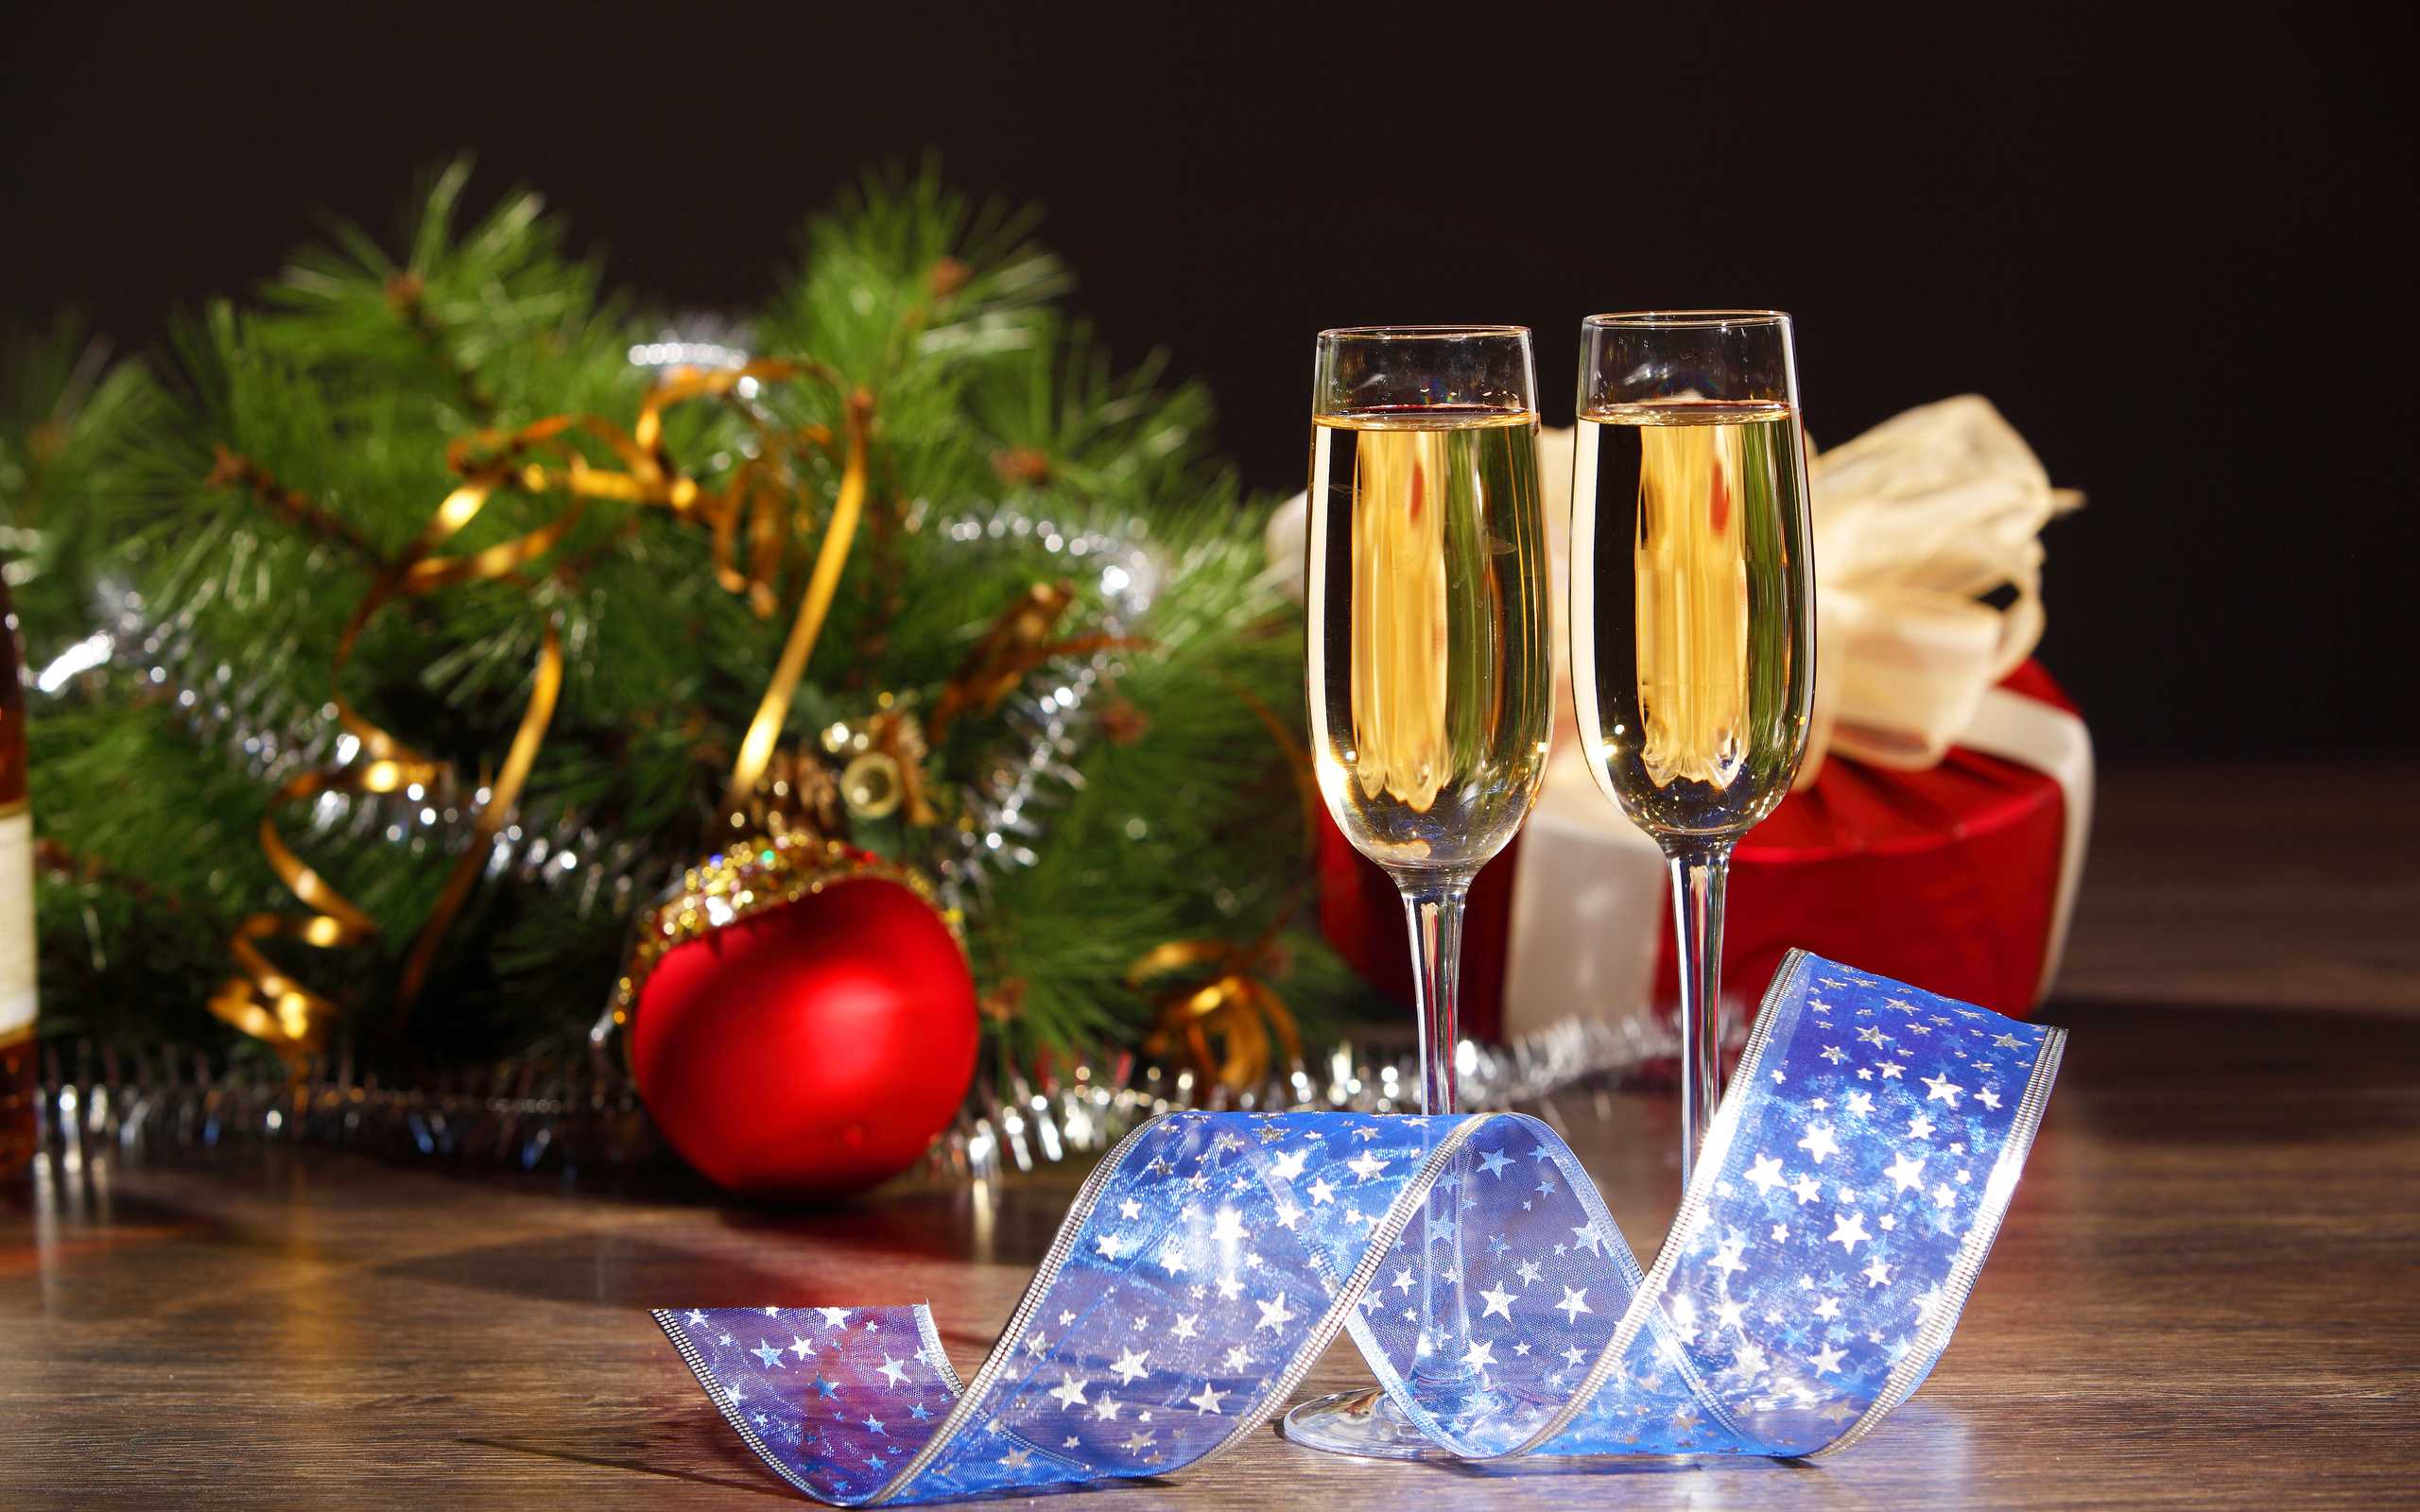 Шампанское на новый год 2018, какое игристое вино или шампанское лучше выбрать на новогодний стол, рейтинг, советы, отзывы + фото